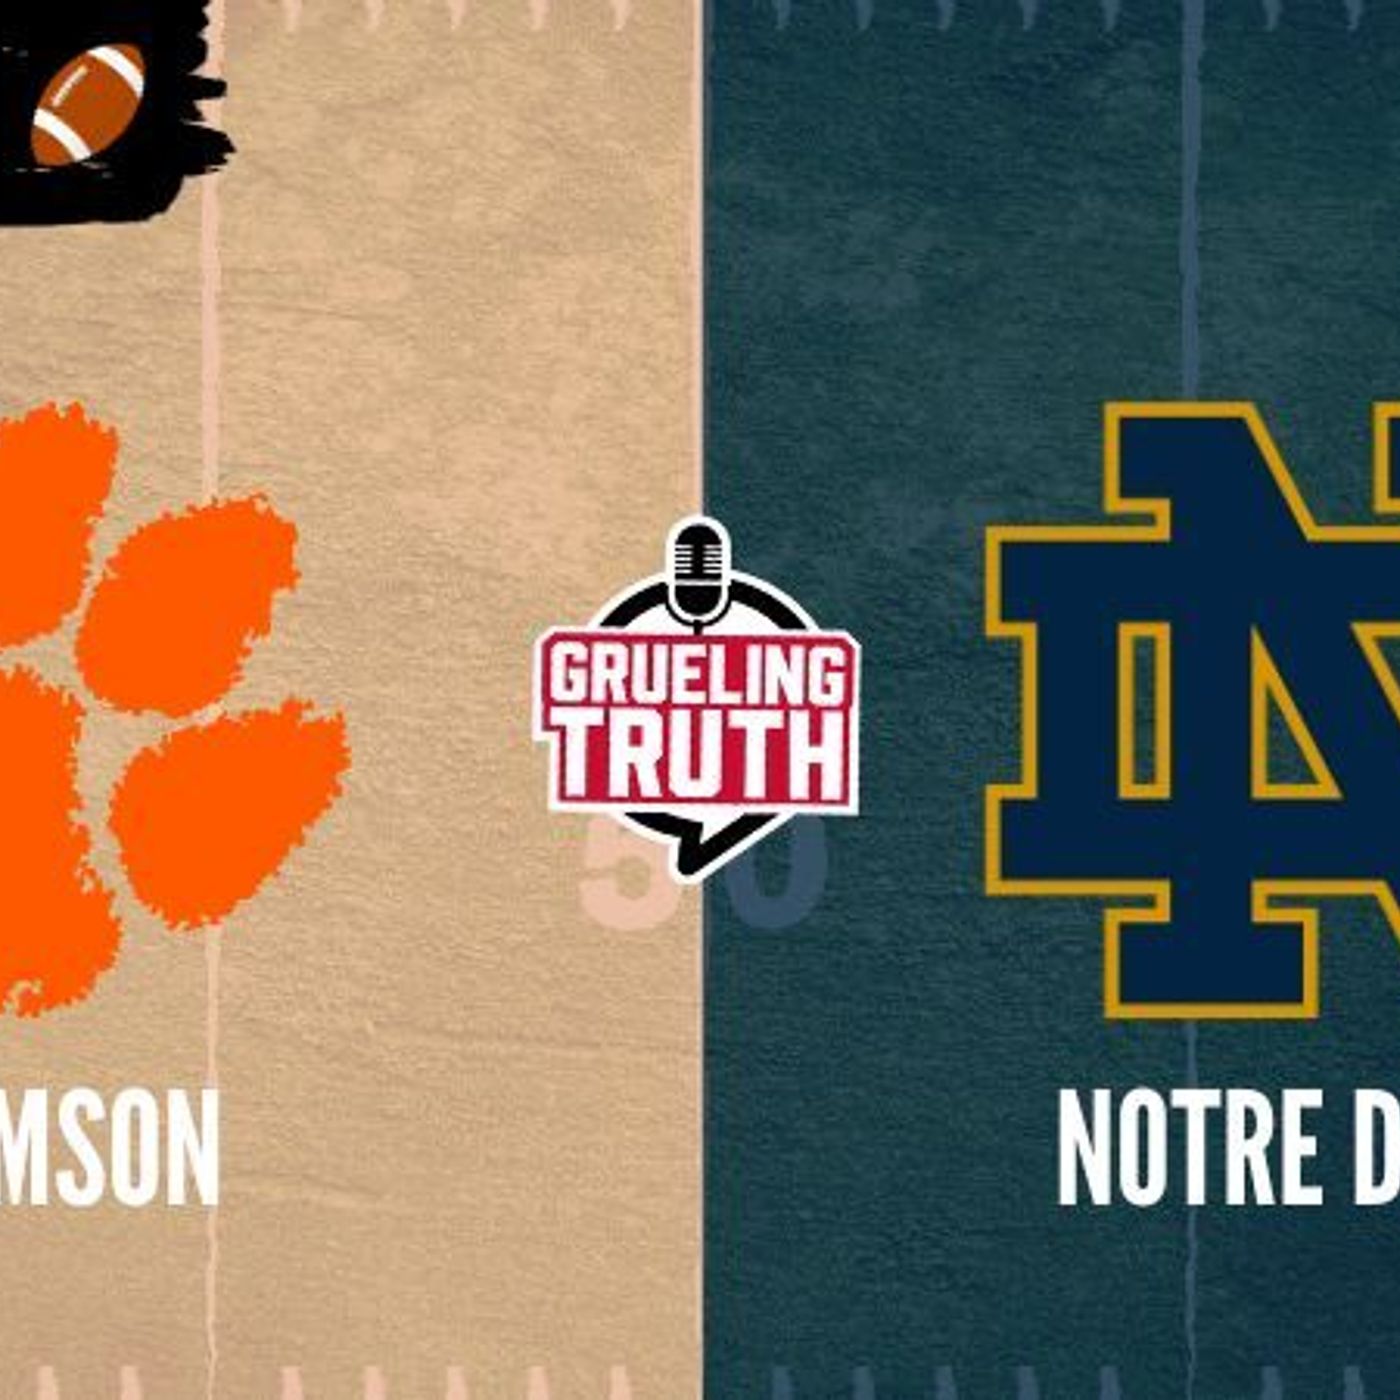 NCAA Football Prediction Show: Notre Dame vs Clemson